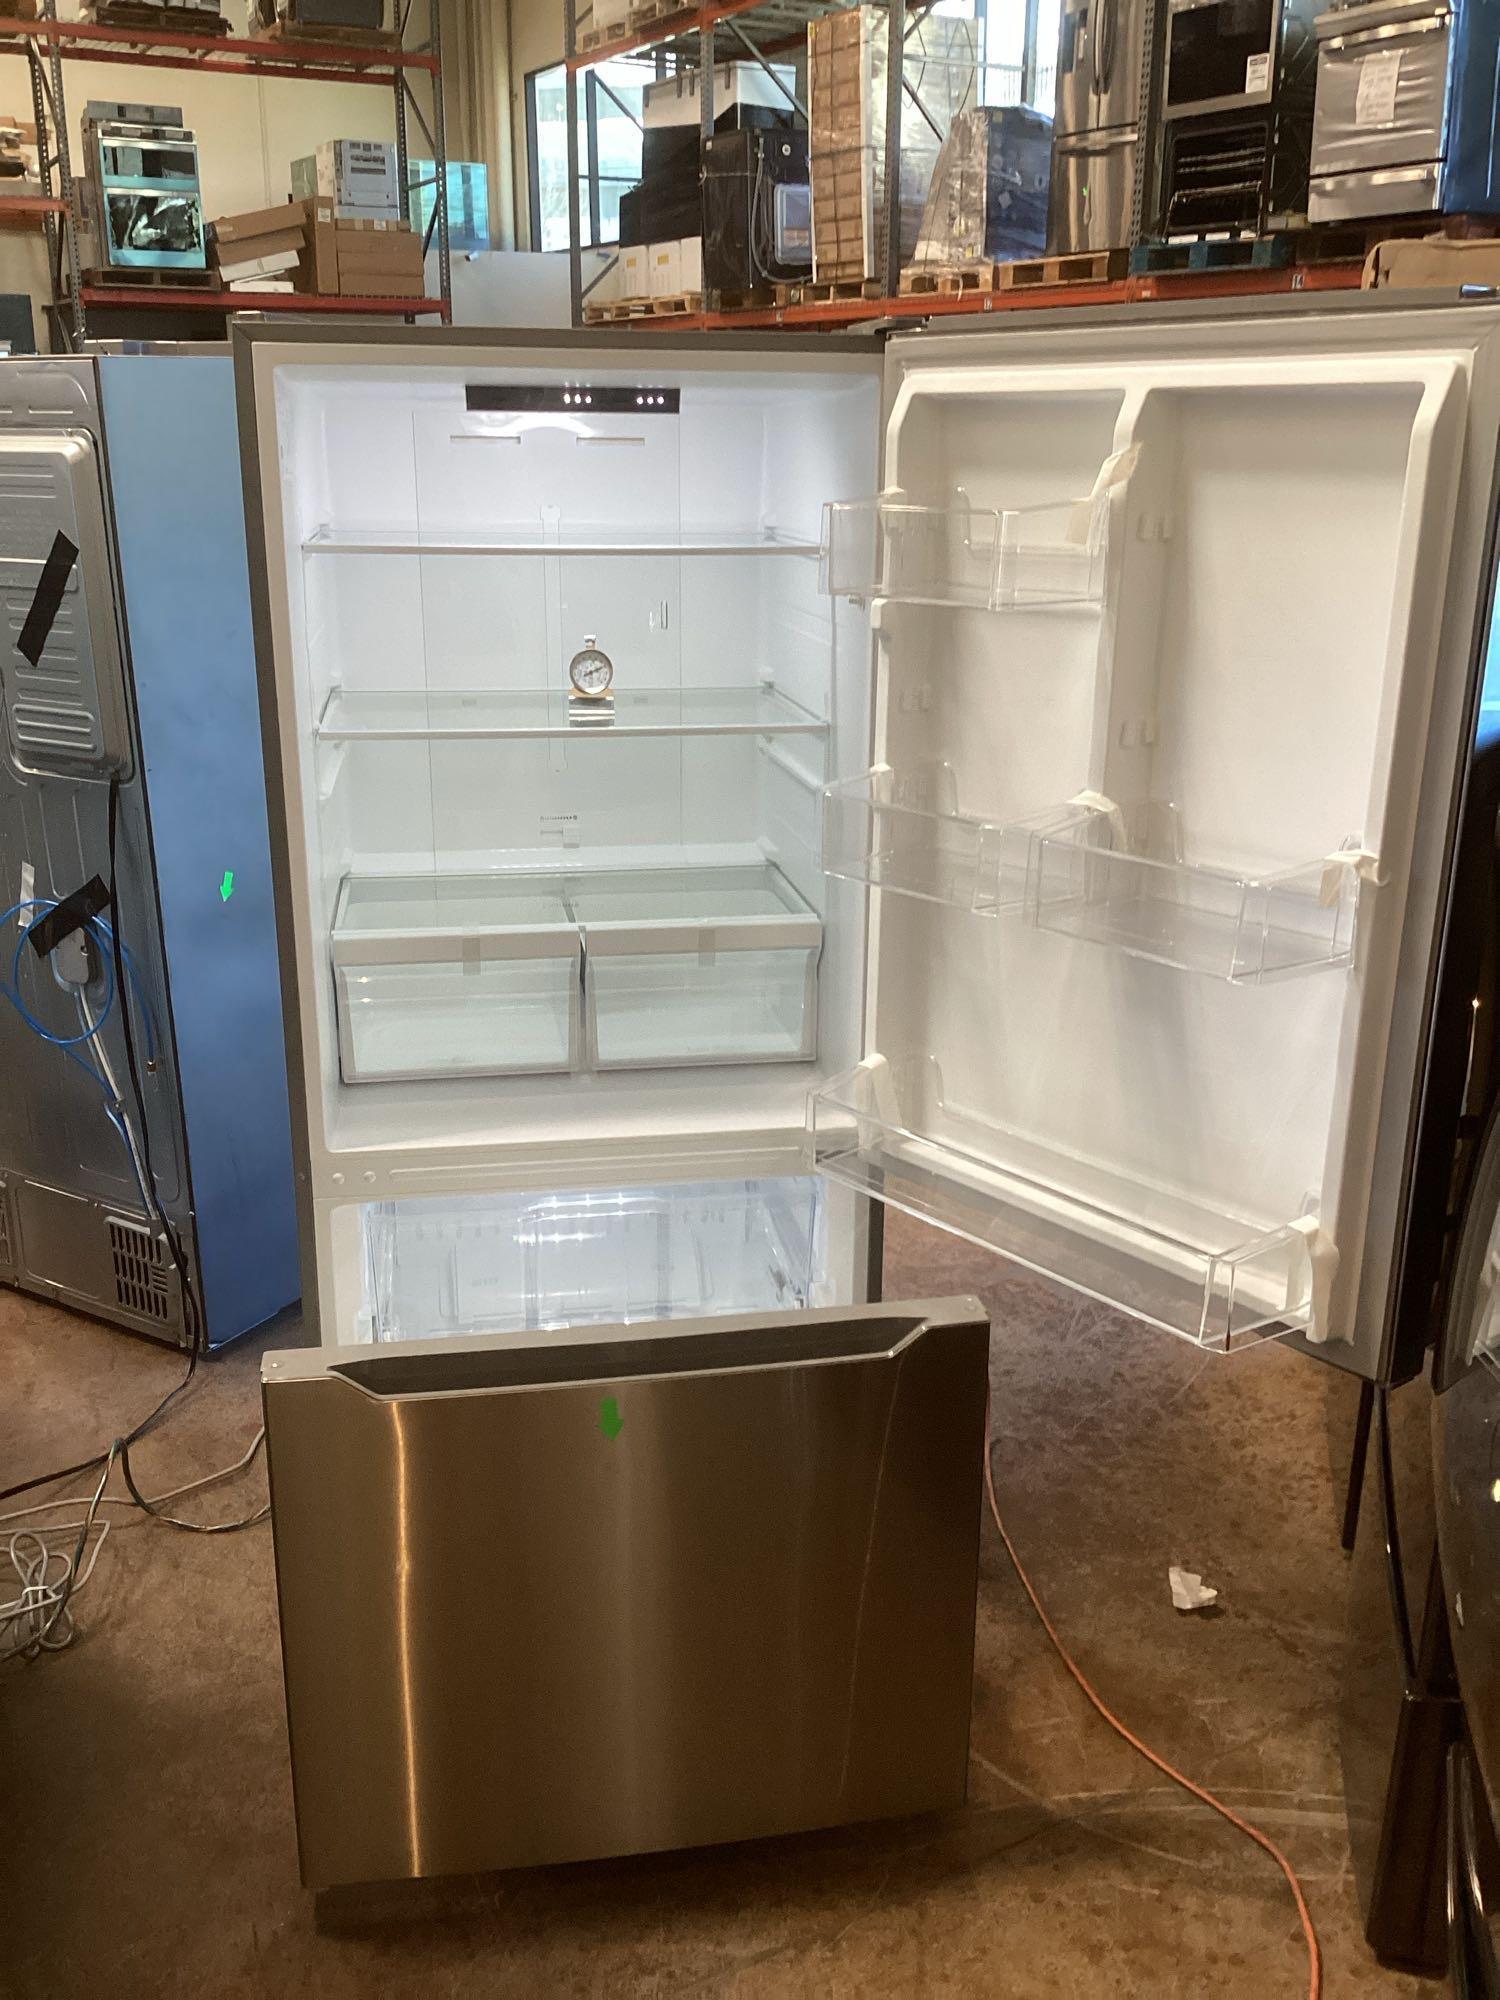 Insignia 18.6 cu. ft. Bottom Freezer Refrigerator*COLD*